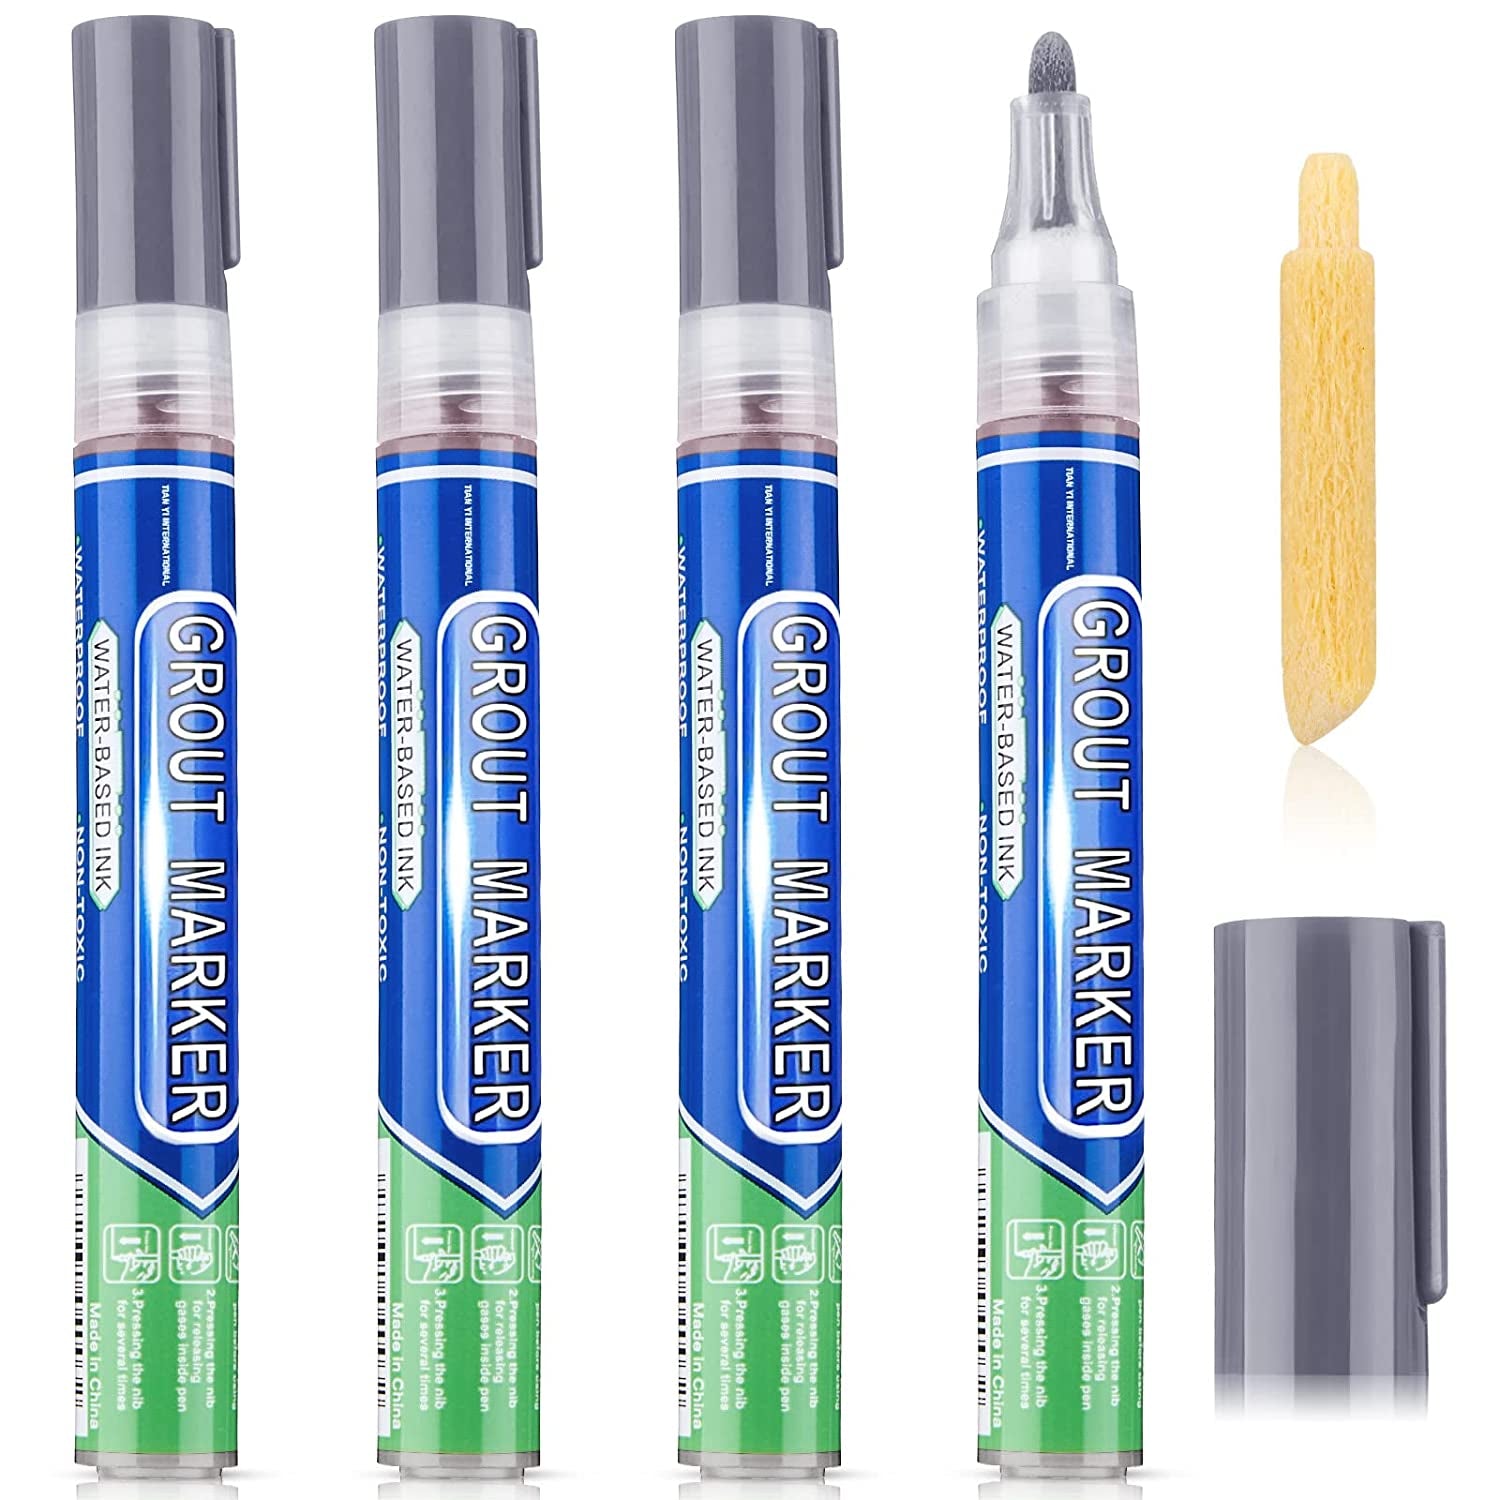 Zonon, Grout Wall Pen Tile Paint Markers Grout Repair Pen Sealer Pen for Bathrooms Kitchen Porch Patio Repair Refresh (Gray,4 Pieces)